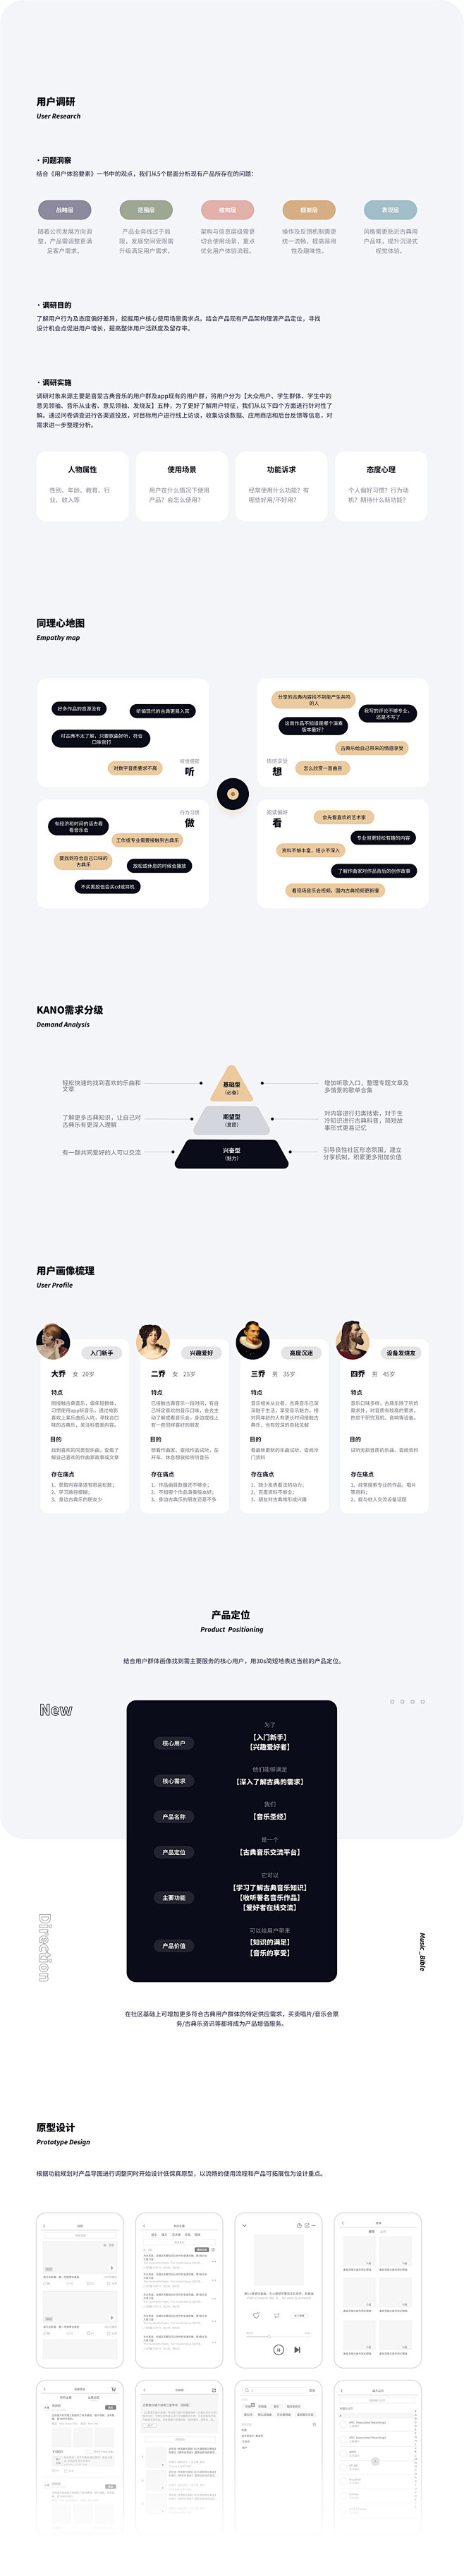 音乐圣经-4.0品牌设计-UI中国用户体...